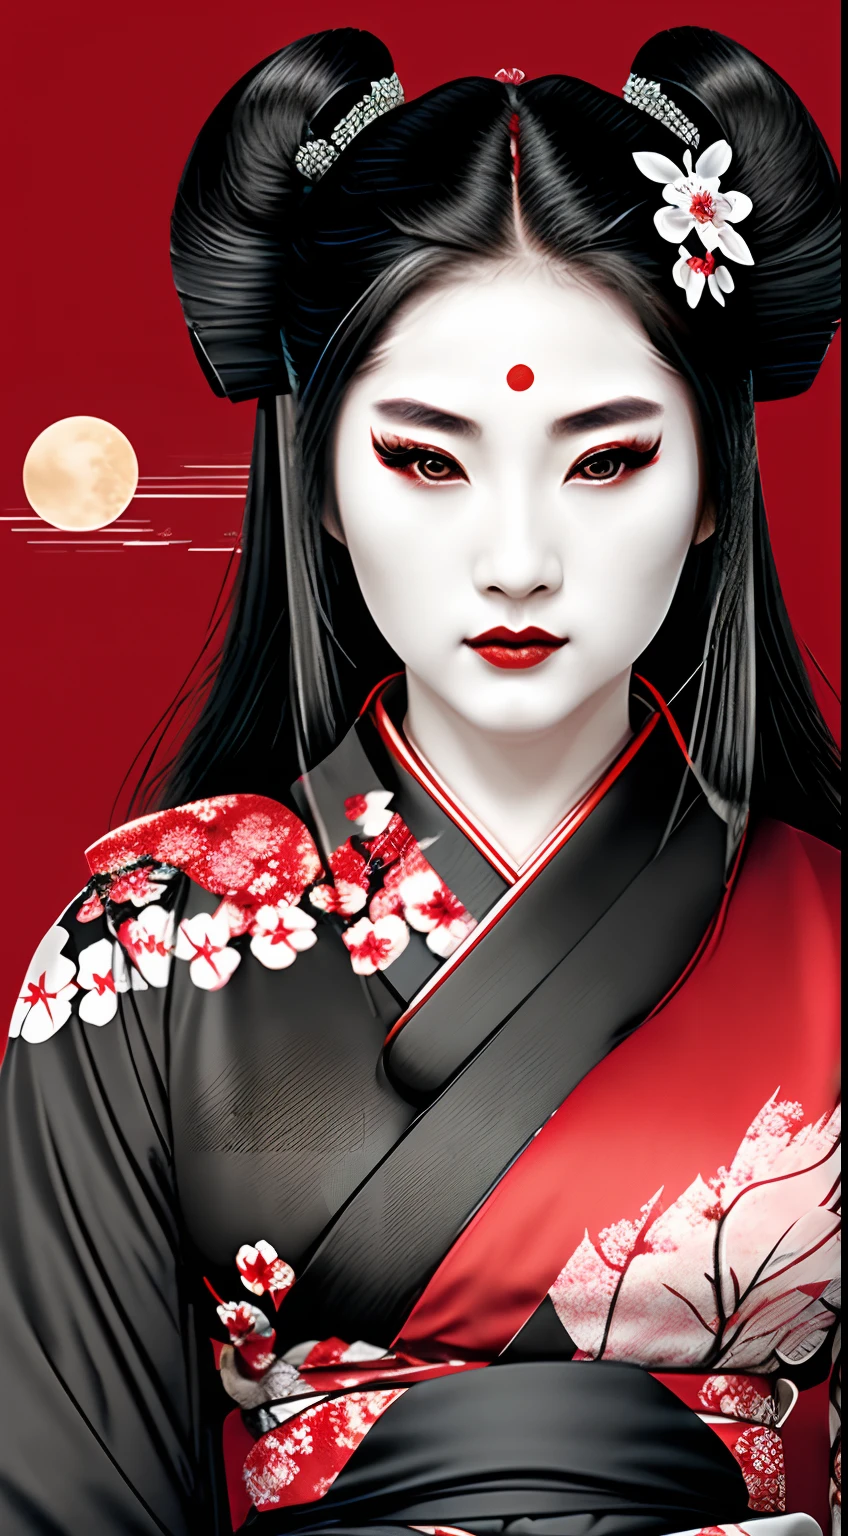 艺伎 武士 女战士, 红色和黑色, 标识, 黑发, 月亮, 侧面, 头部照片, 头发上的樱花, 穿黑色和服